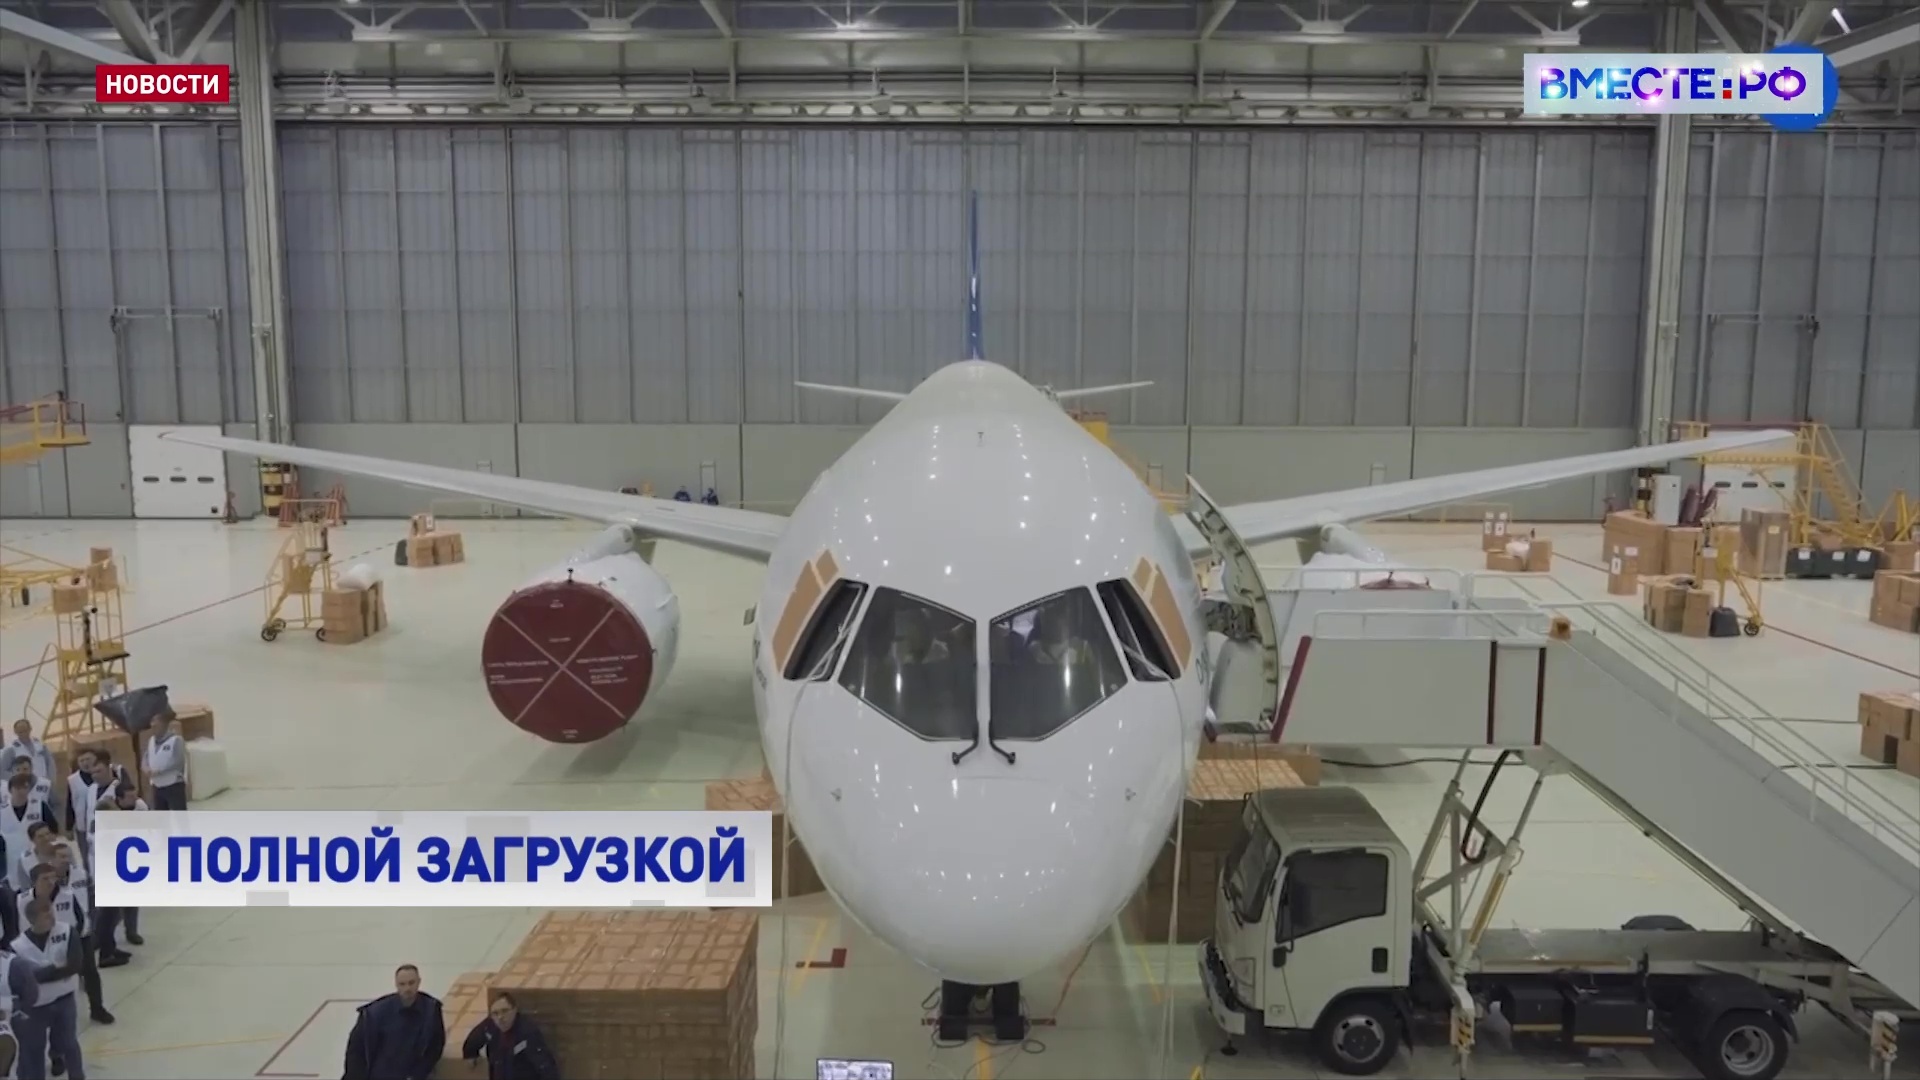 Российский самолет МС-21-300 теперь может летать с полной загрузкой